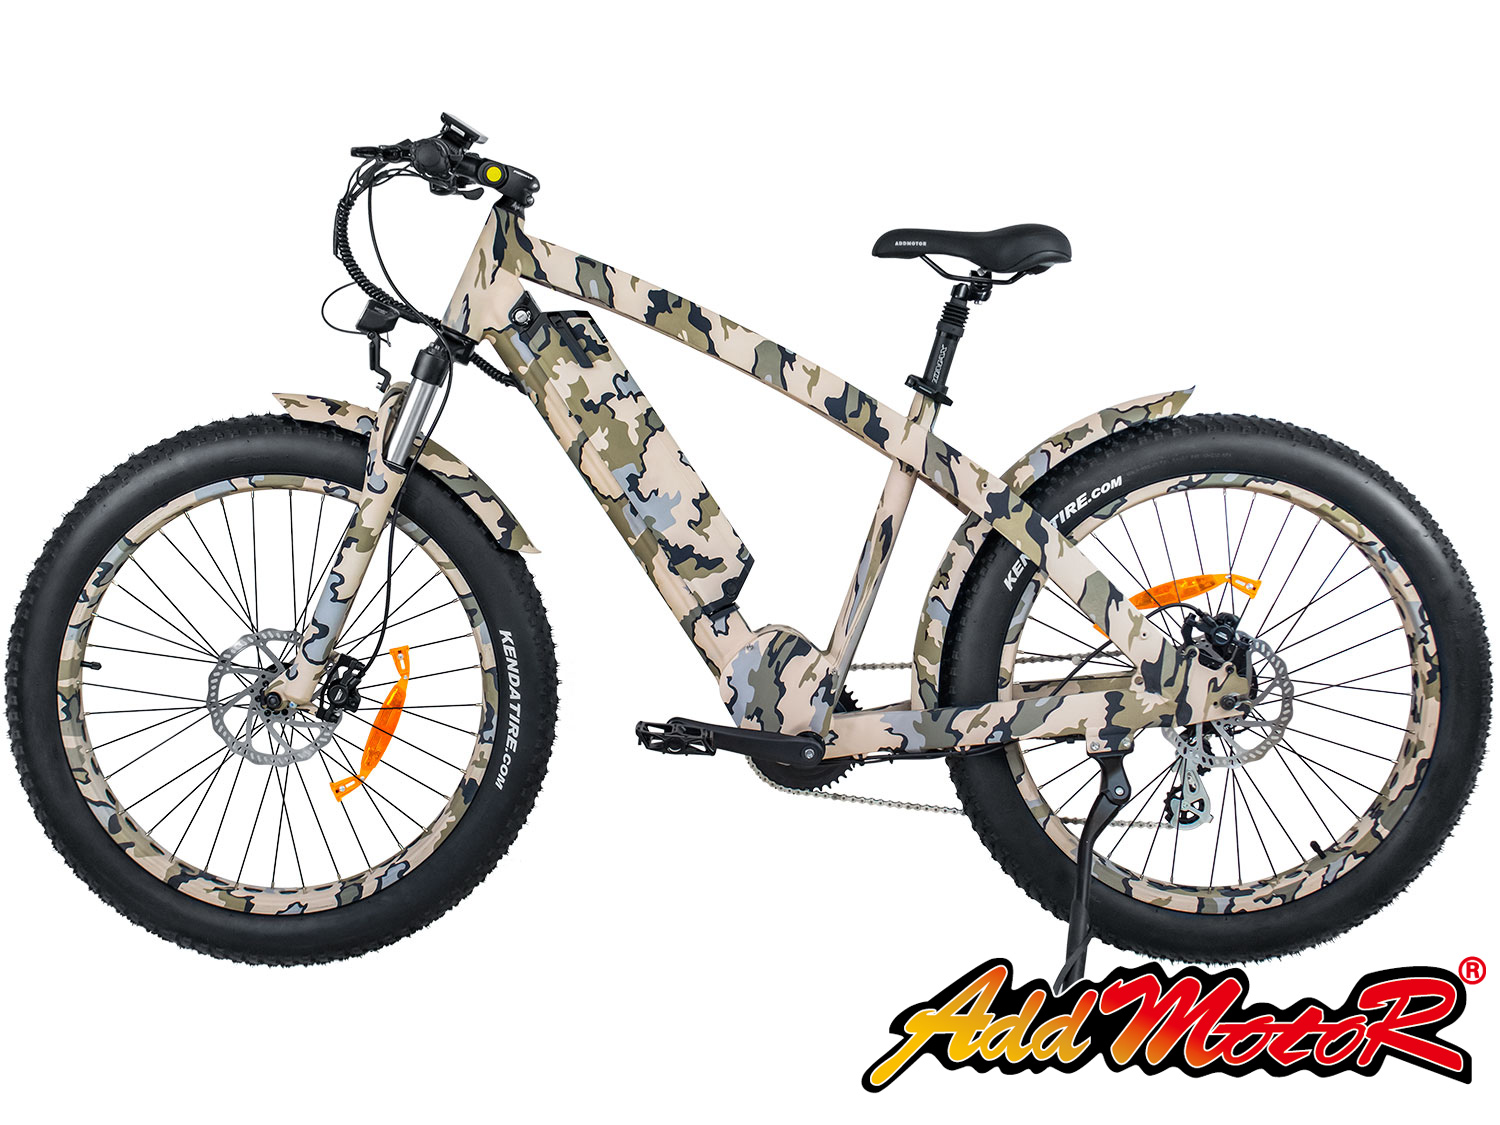 Wildtan M-5600 fat tire electric bike in camo